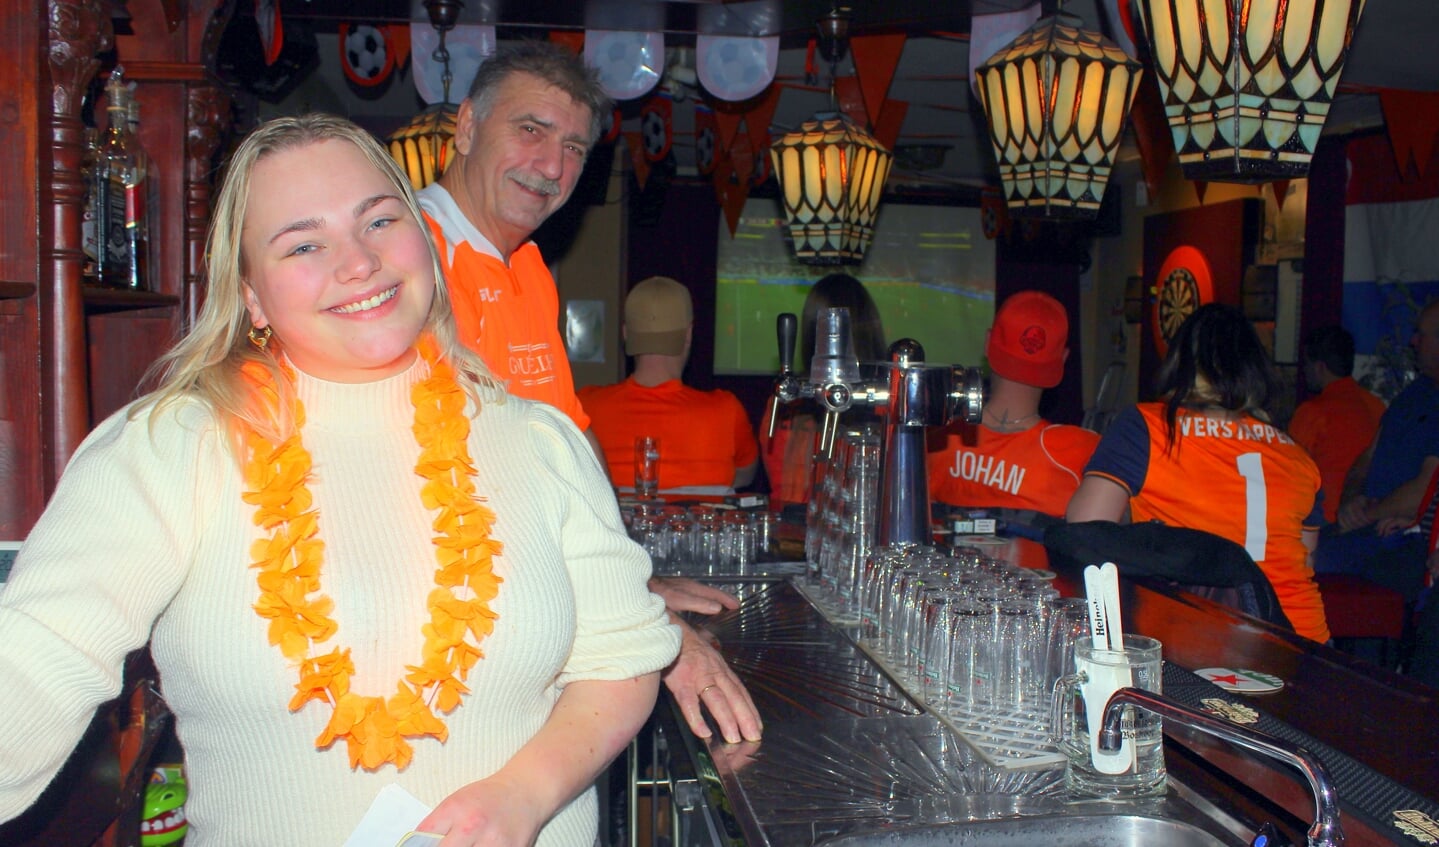 Bardame Zoë van Santen (23) met haar baas Johan van der Wilt (65) in Café Gouwezicht: 'Ik weet niets van voetbal, maar vind het wel gezellig zo met de gasten'.